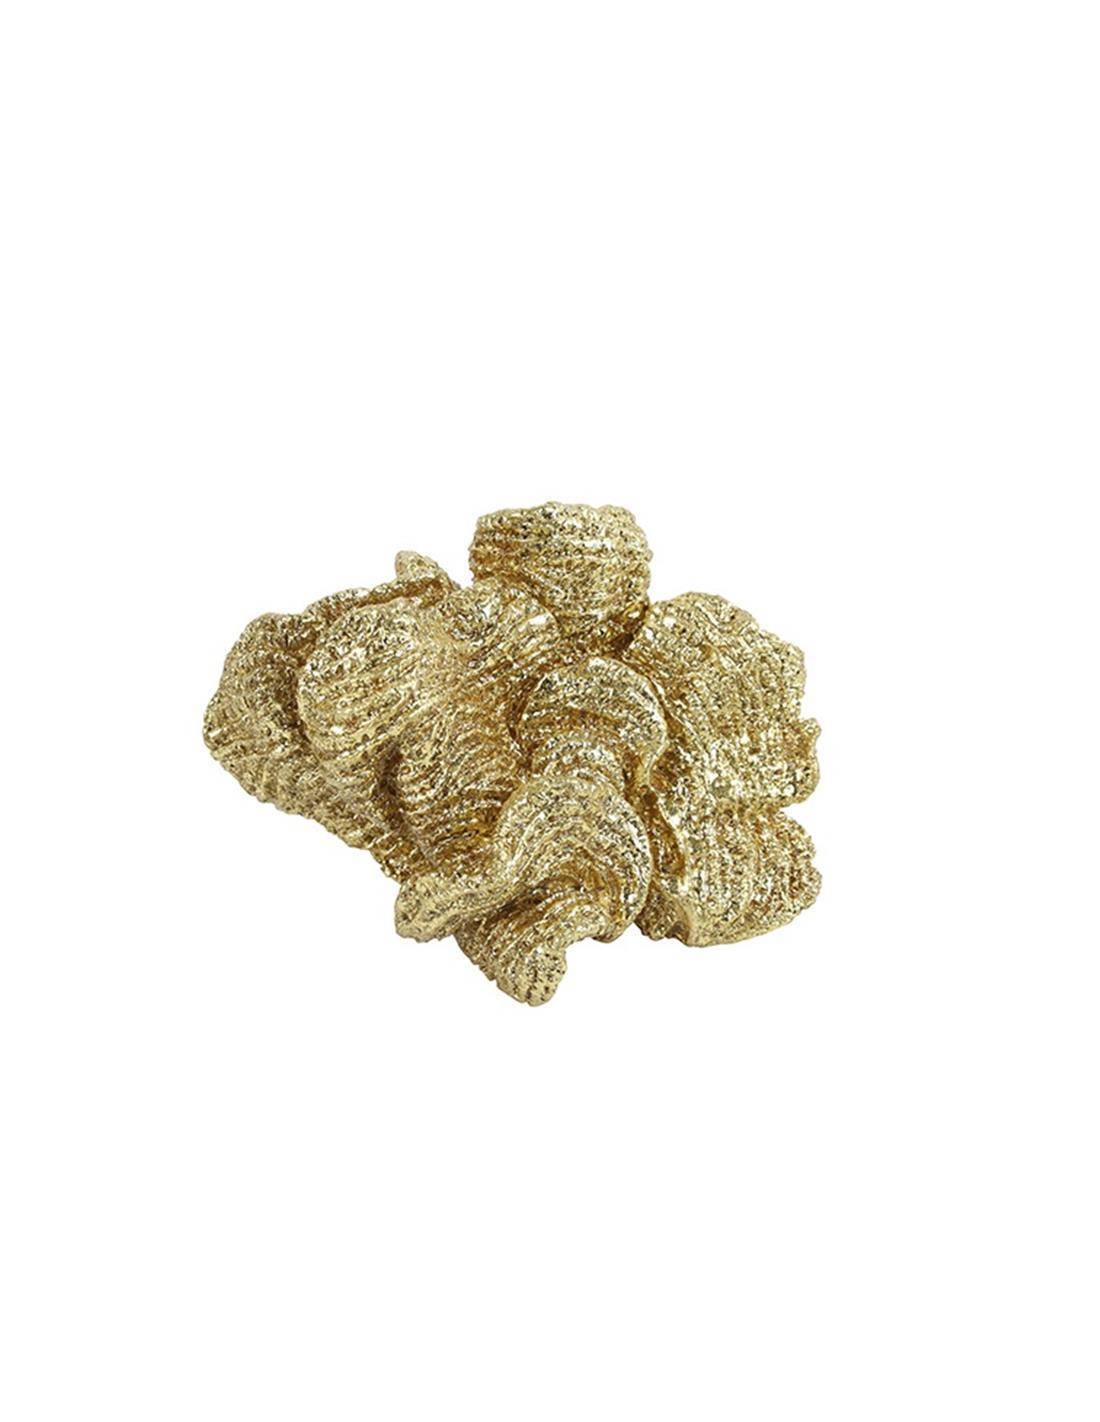 Κοράλι κεραμ.χρυσό 11Χ7Χ7CM